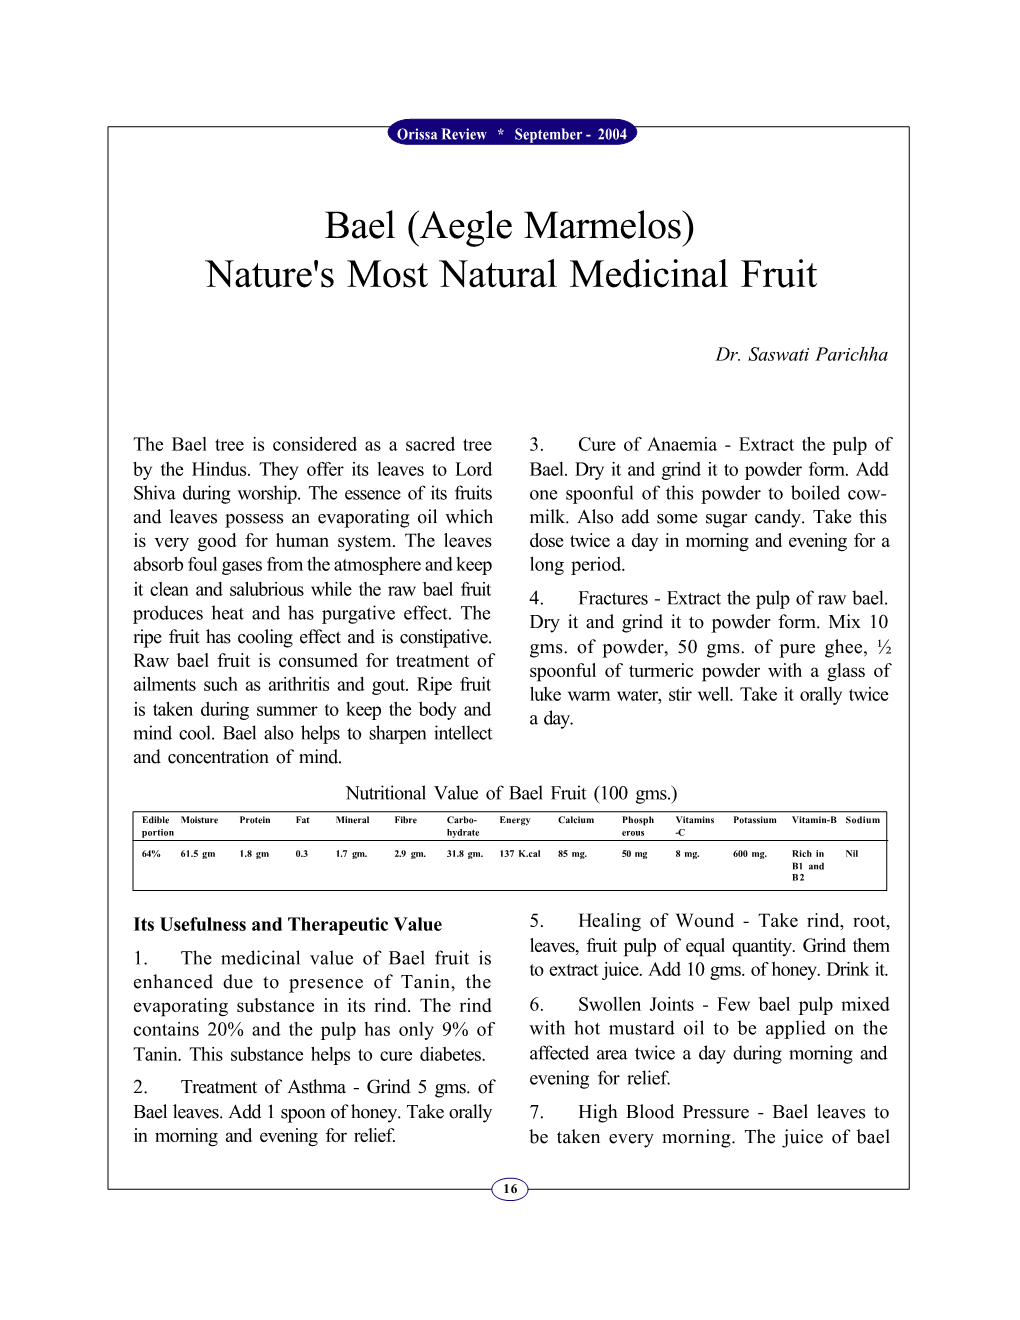 Bael (Aegle Marmelos) Nature's Most Natural Medicinal Fruit